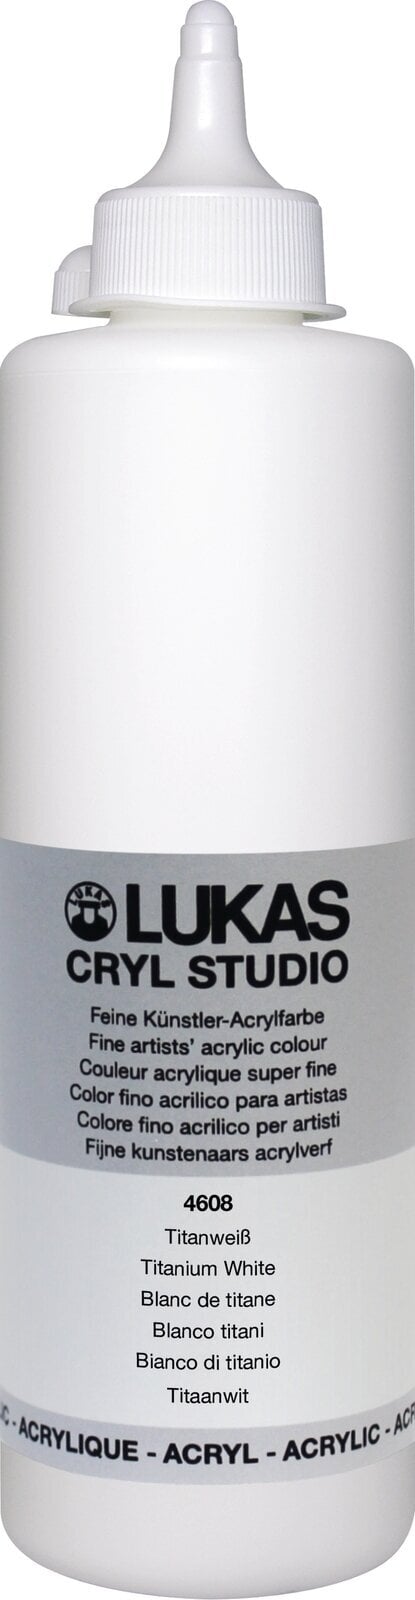 Acrylfarbe Lukas Cryl Studio Plastic Bottle Acrylfarbe Titanium White 500 ml 1 Stck